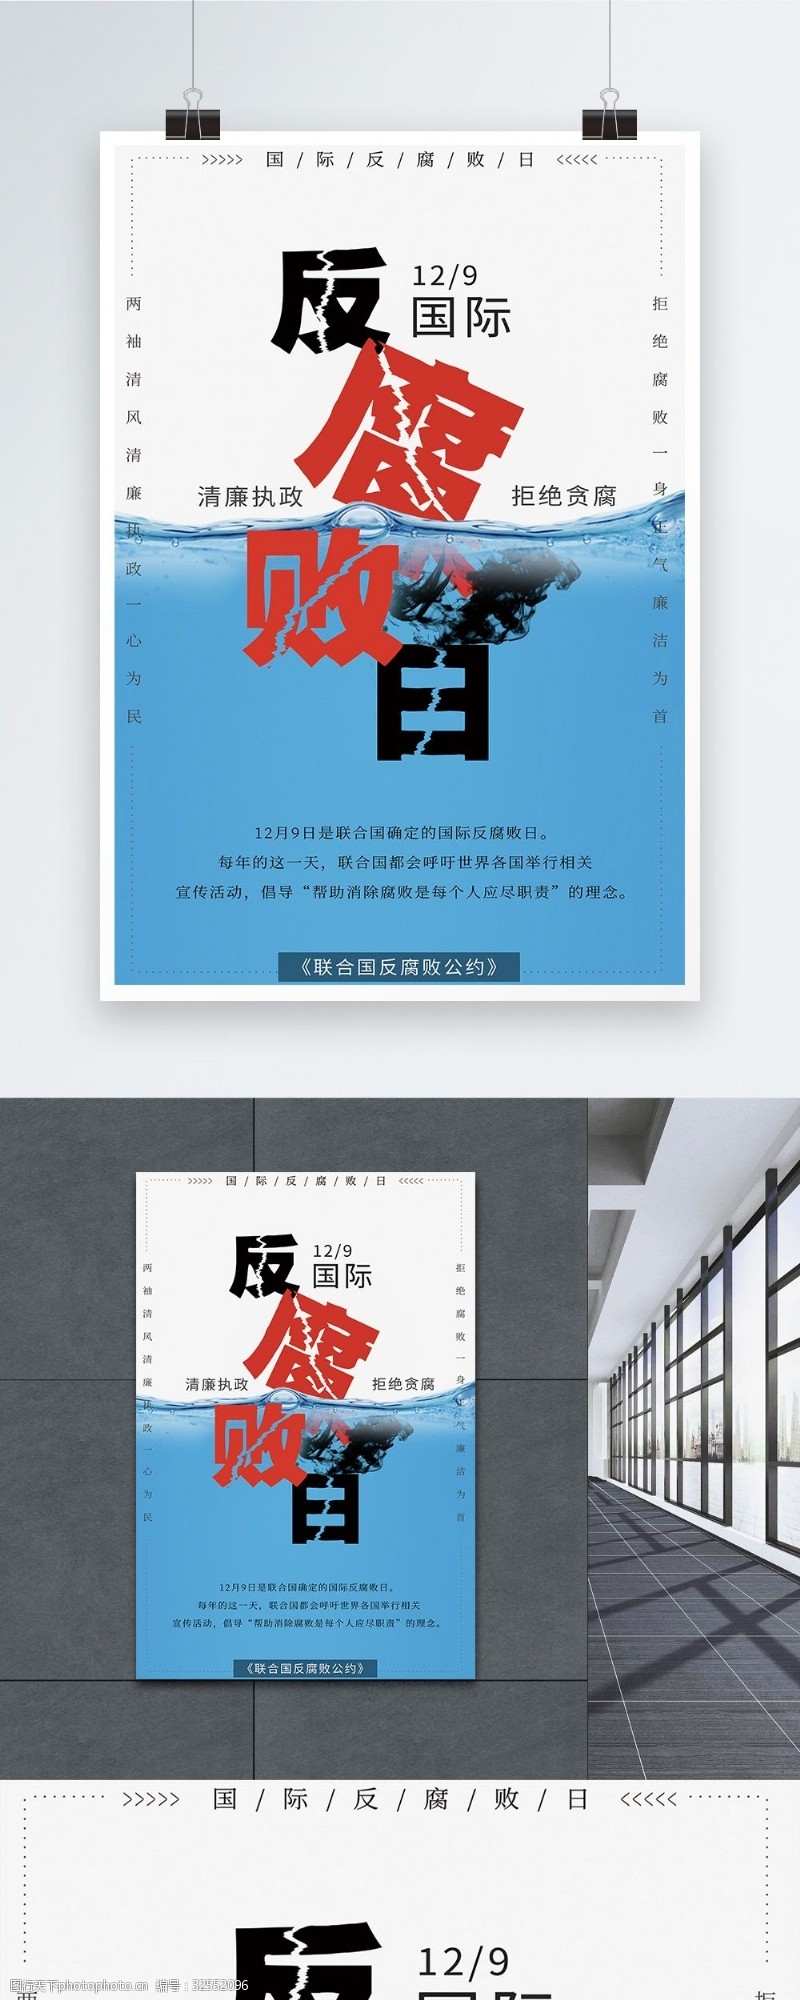 反贪污国际反腐败日宣传海报